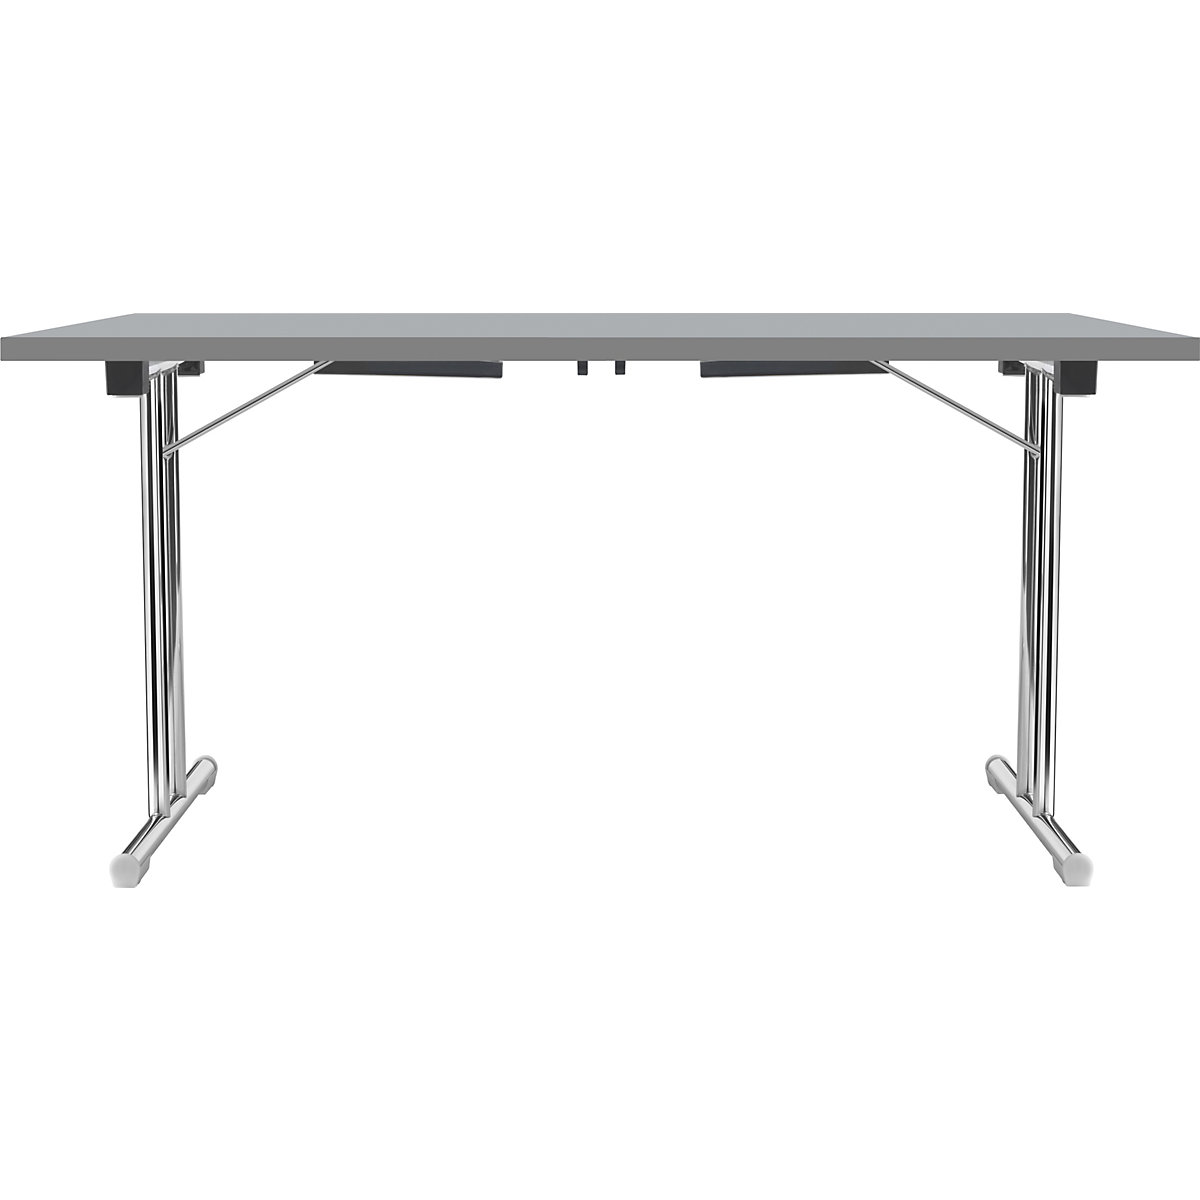 Inklapbare tafel met dubbel T-vormig onderstel, frame van staalbuis, verchroomd, lichtgrijs/antraciet, b x d = 1200 x 600 mm-9